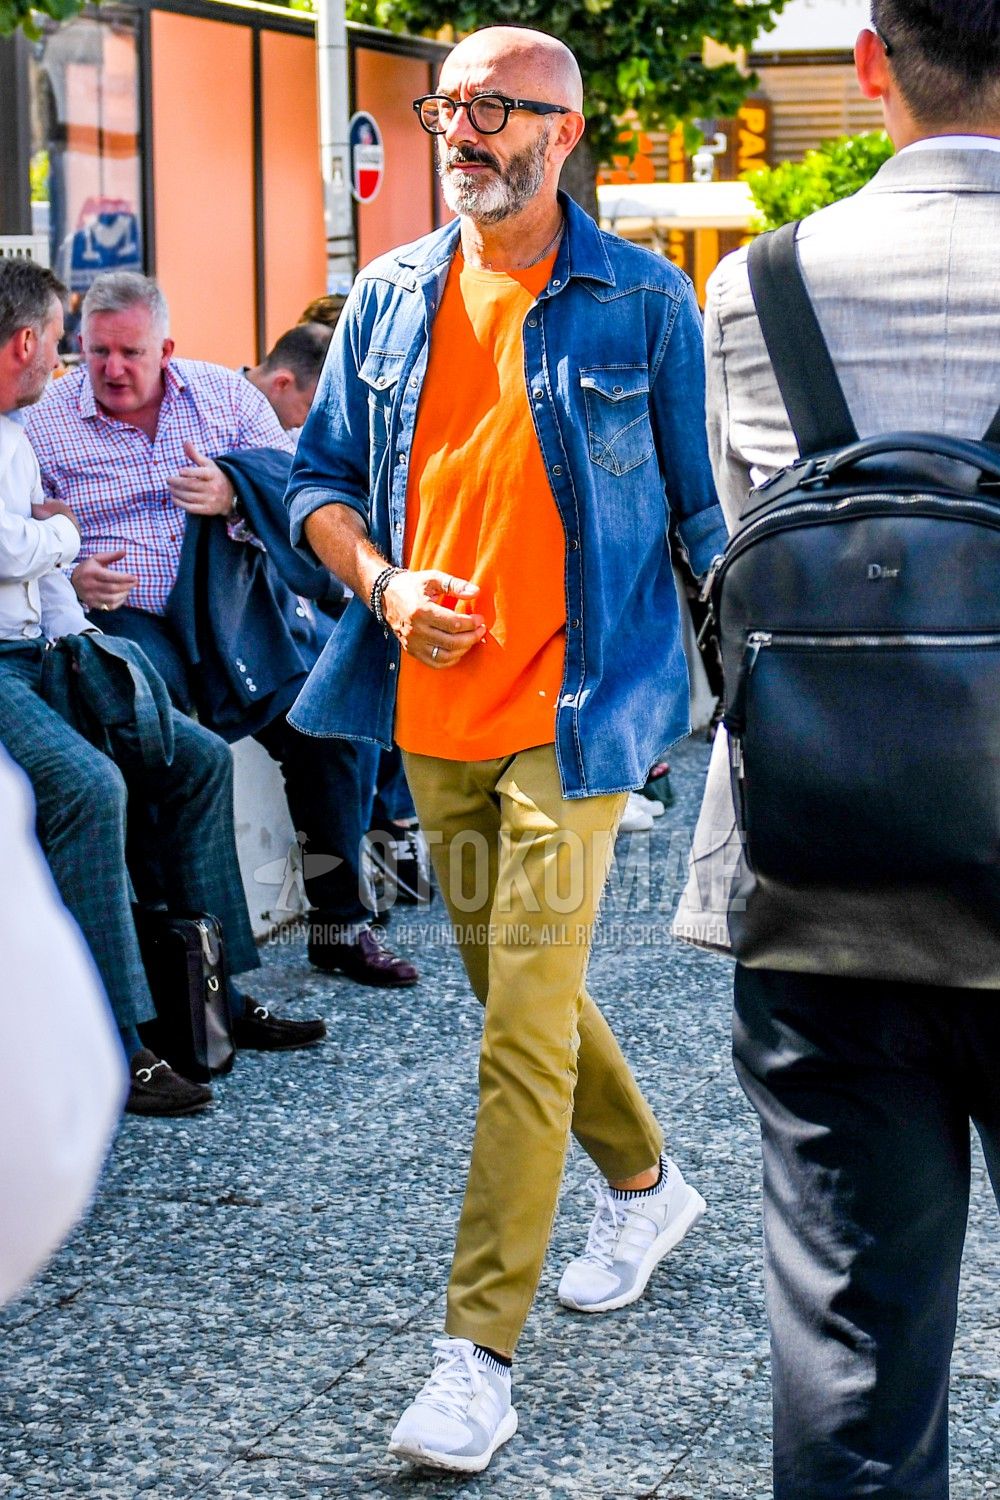 オレンジtシャツ コーデ特集 ビタミンカラーで明るい印象に仕上げたメンズの着こなし紹介 メンズファッションメディア Otokomae ページ 3otokomae 男前研究所 ページ 3